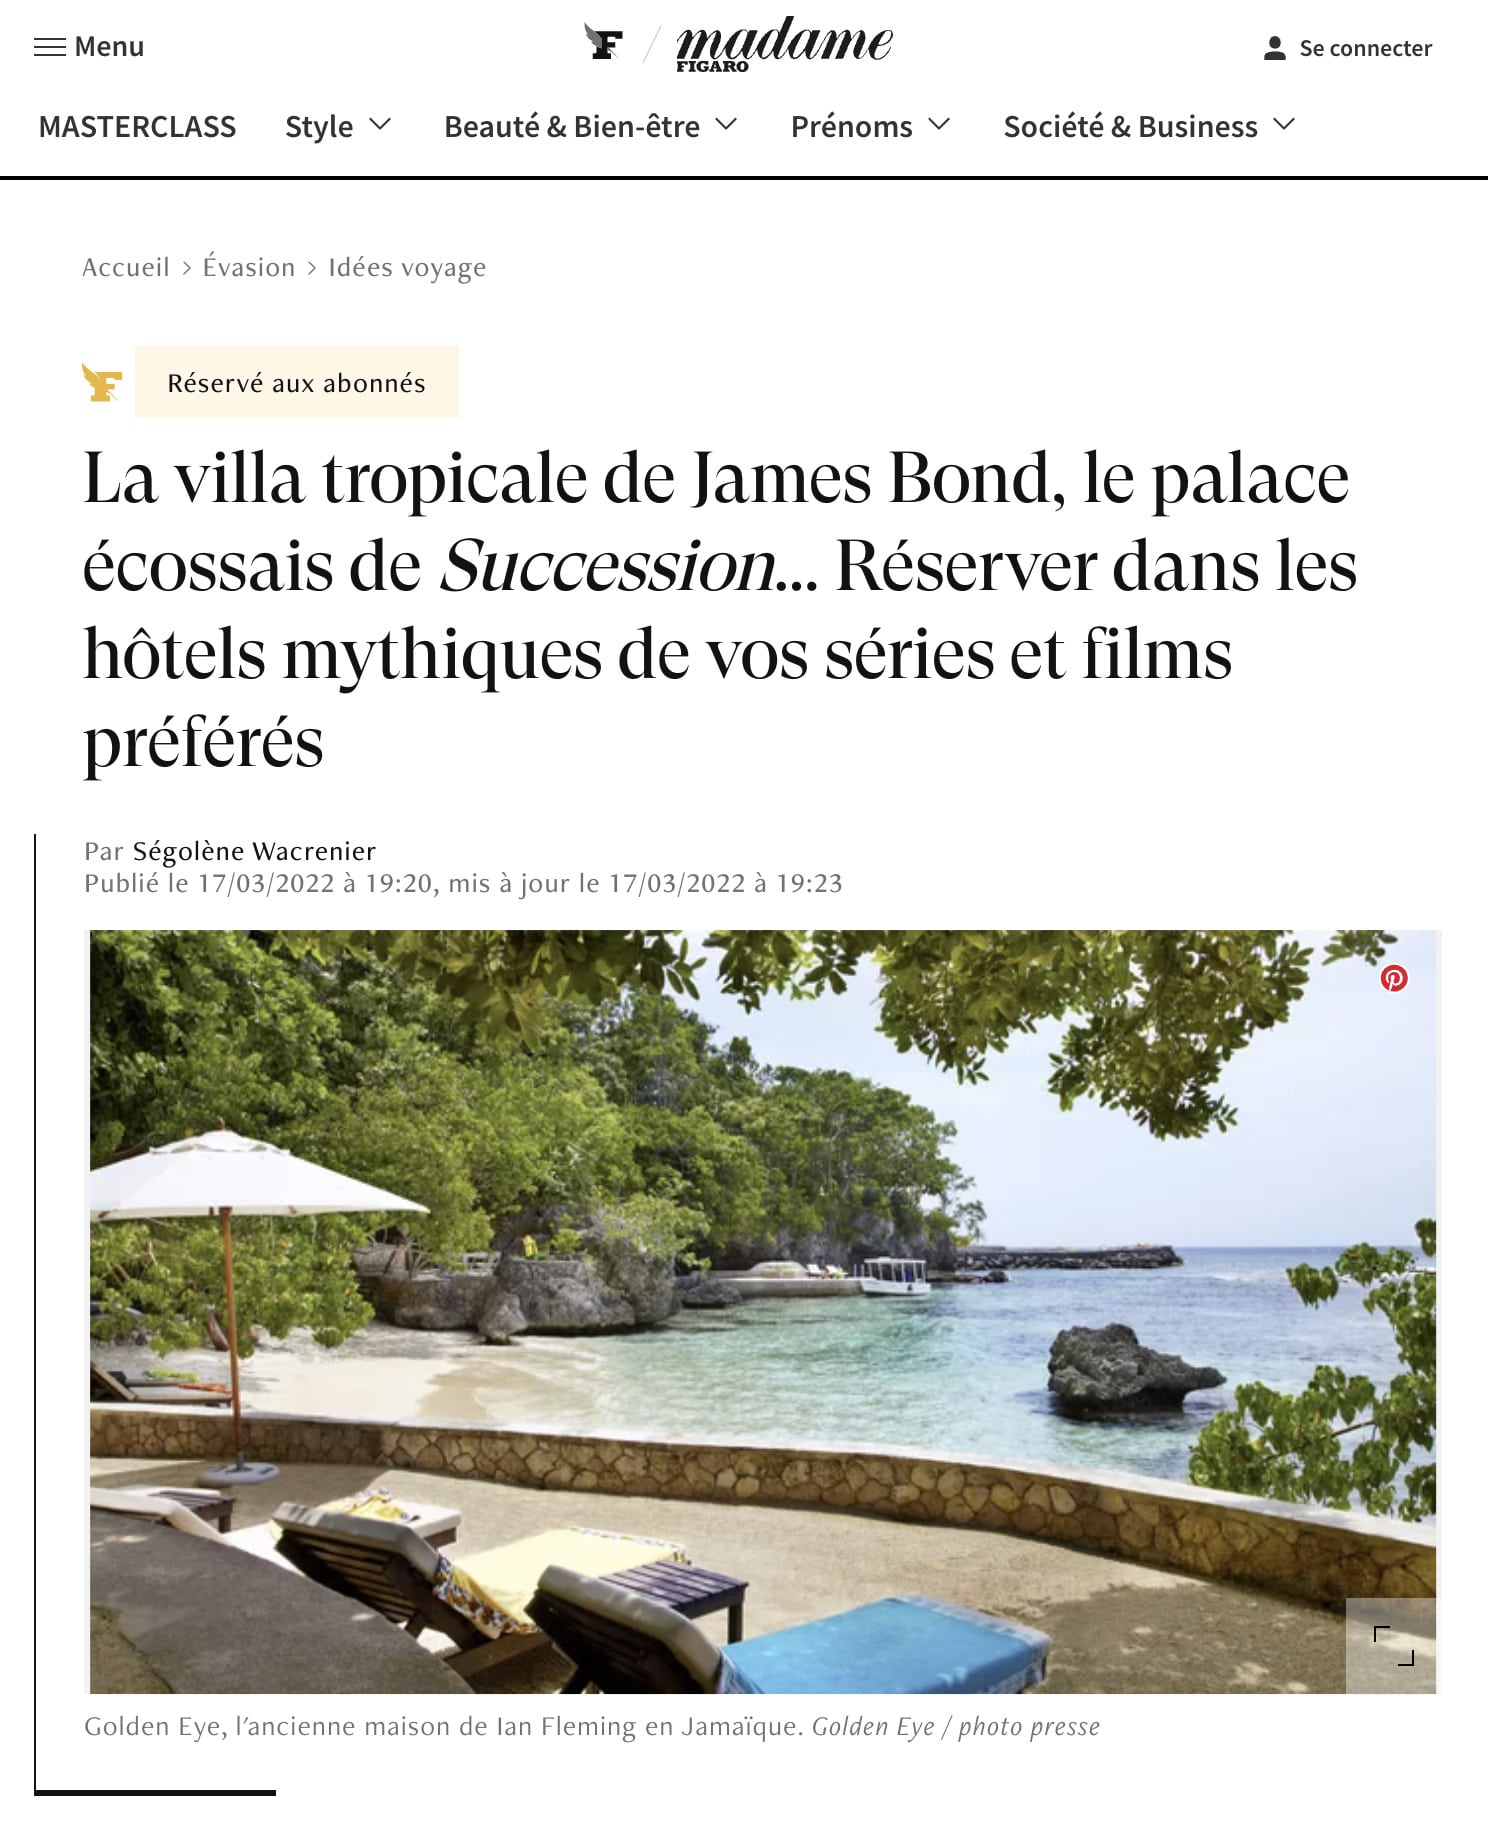 Madame Figaro La villa tropicale de James Bond le palace ecossais de Succession... Reserver dans les hotels mythiques de vos series et films preferes